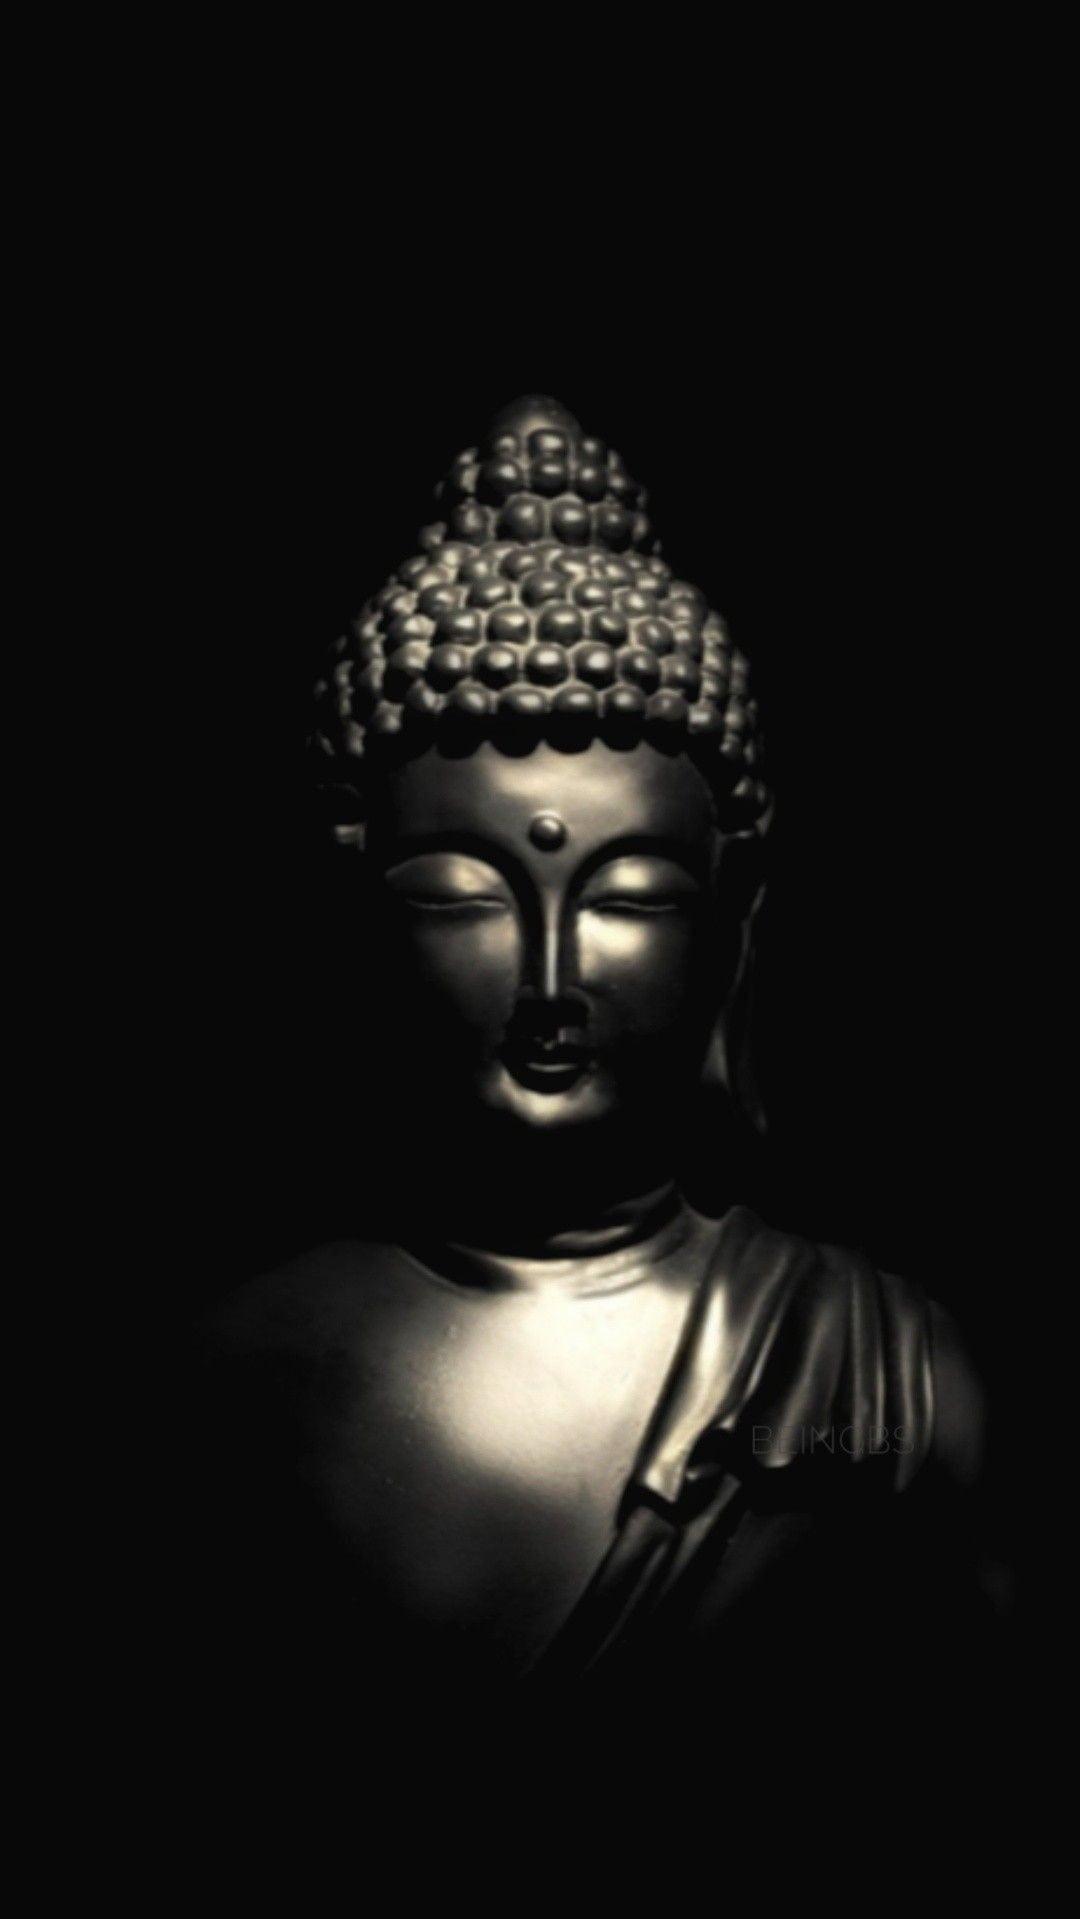 Các hình ảnh Phật là lựa chọn tuyệt vời cho việc chọn hình nền điện thoại, giúp cho bạn có được một không gian tĩnh lặng và thanh tịnh mỗi khi nhìn vào điện thoại. Bộ sưu tập các hình ảnh này không chỉ đẹp mắt mà còn ý nghĩa sâu sắc, giúp bạn nhận thức và tìm hiểu thêm về văn hóa Phật giáo.